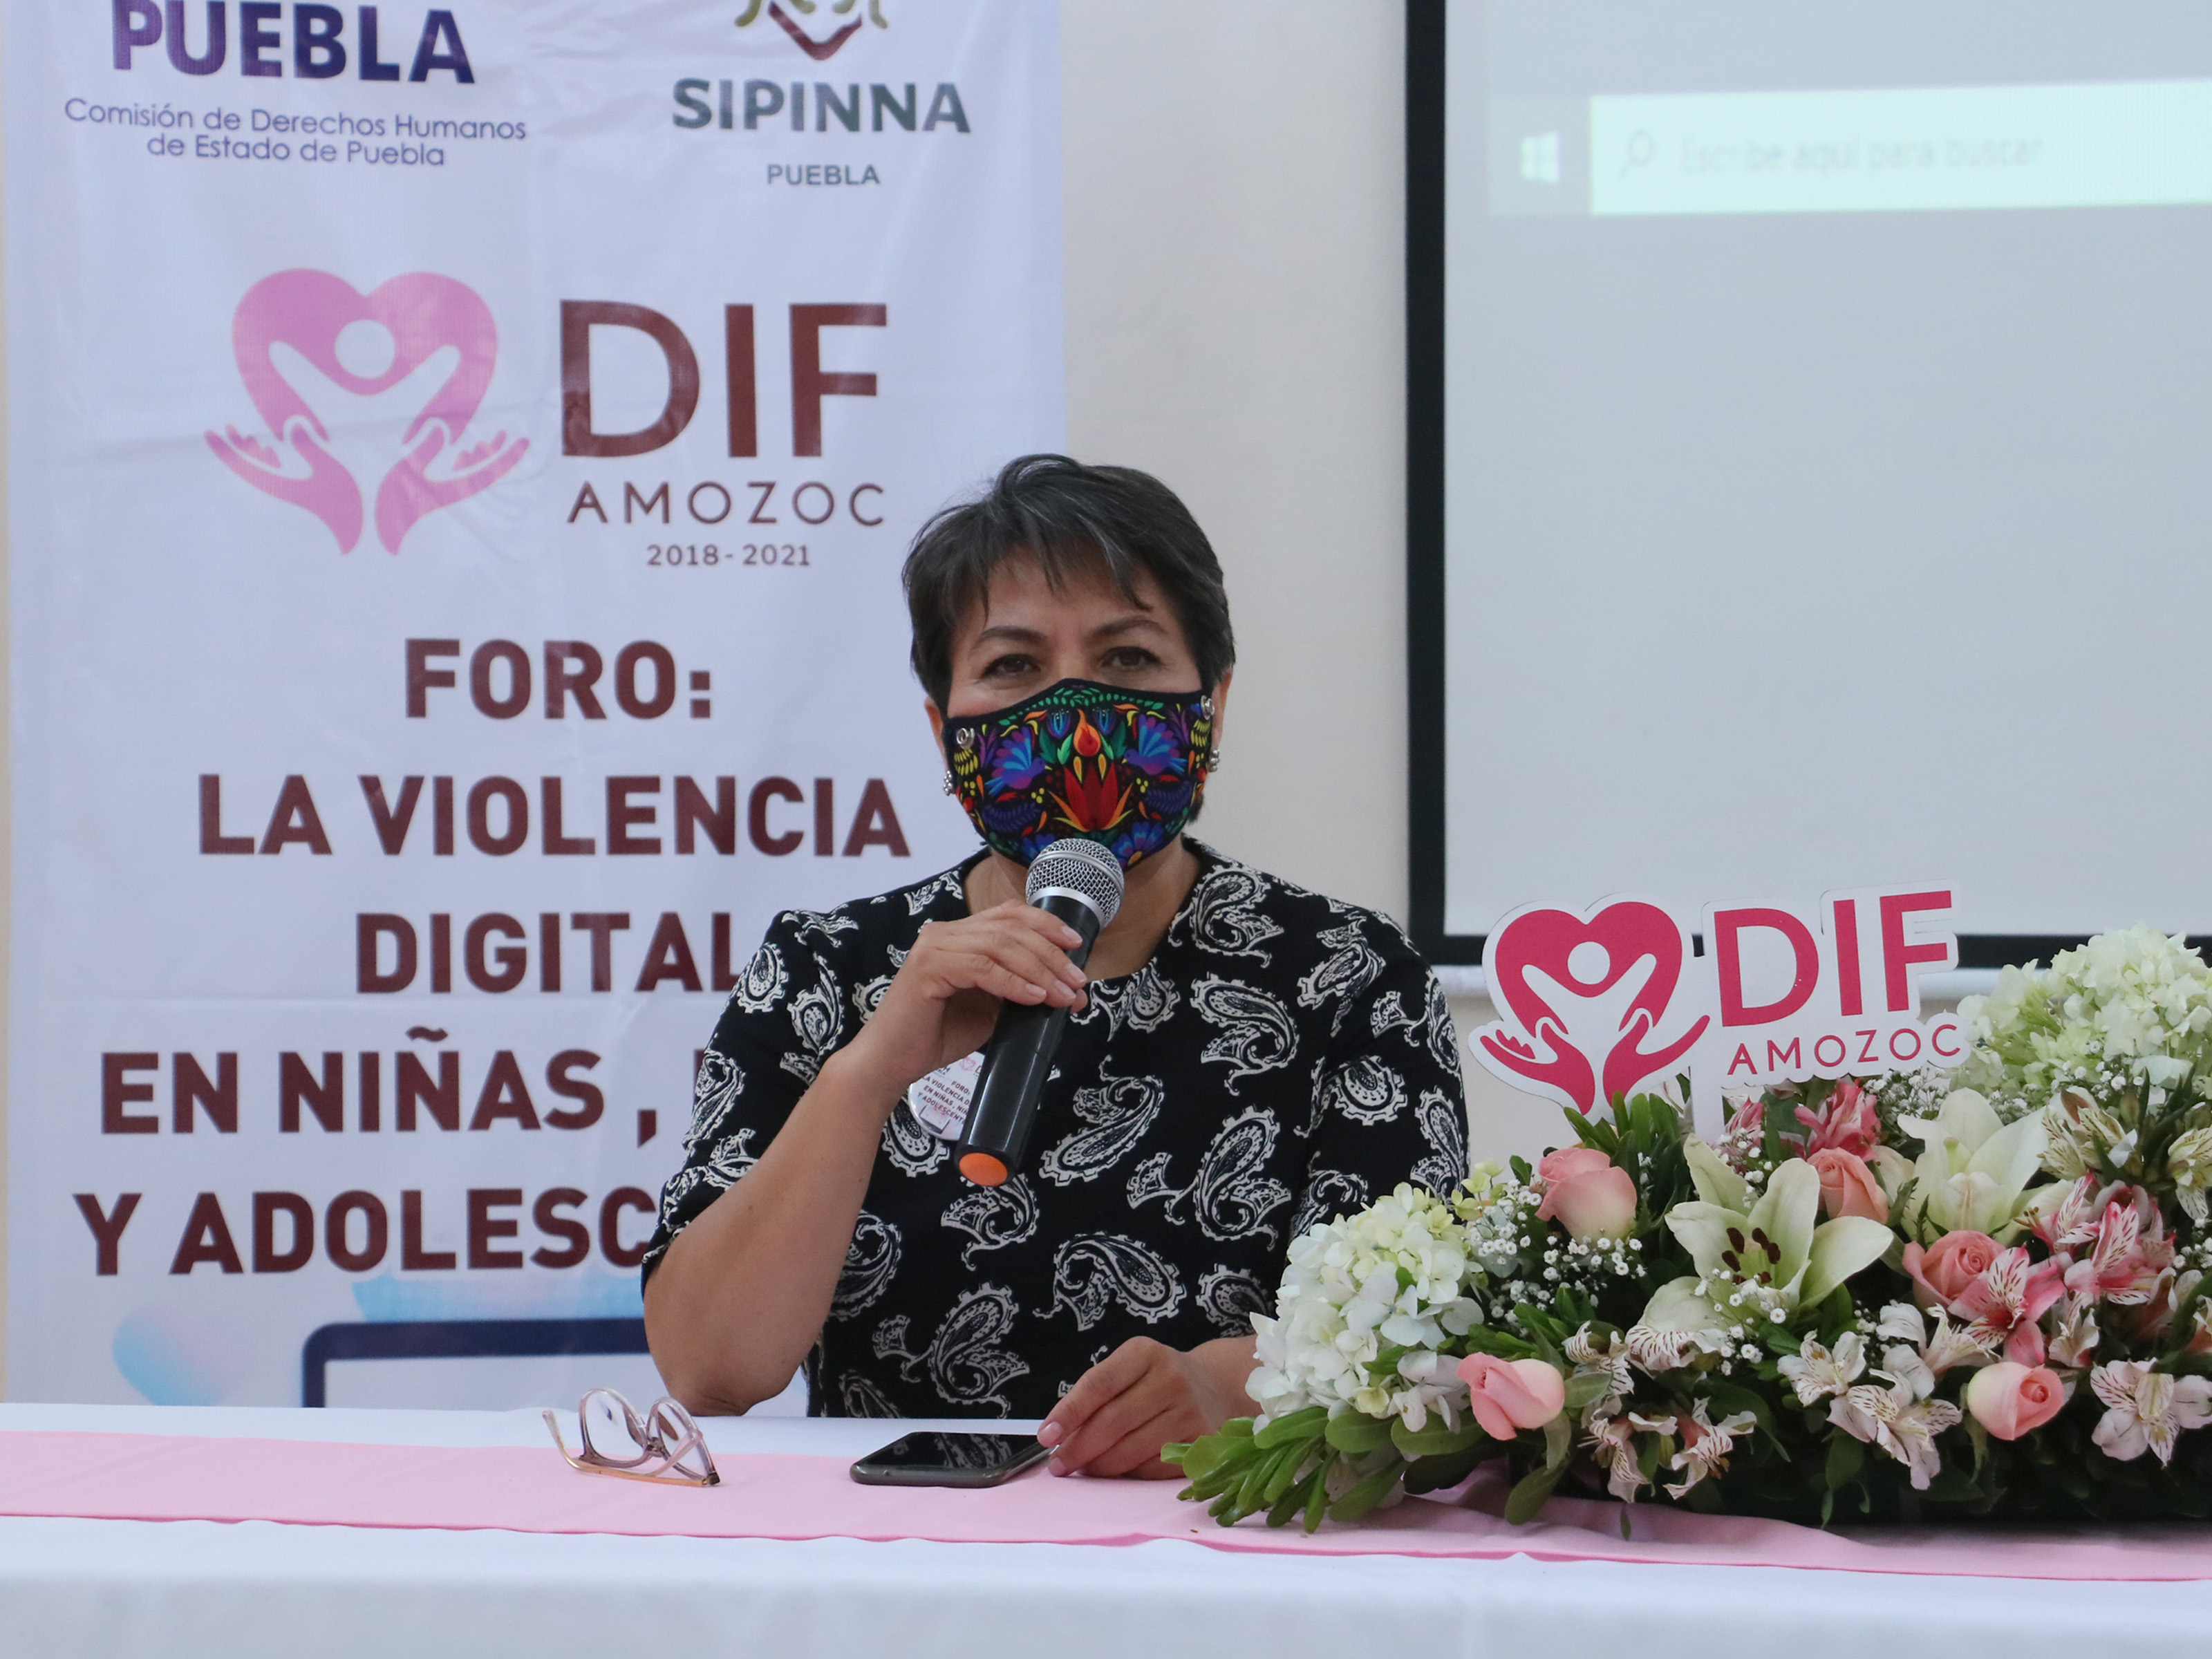 En foro de SIPINNA, especialista pide denunciar la violencia digital